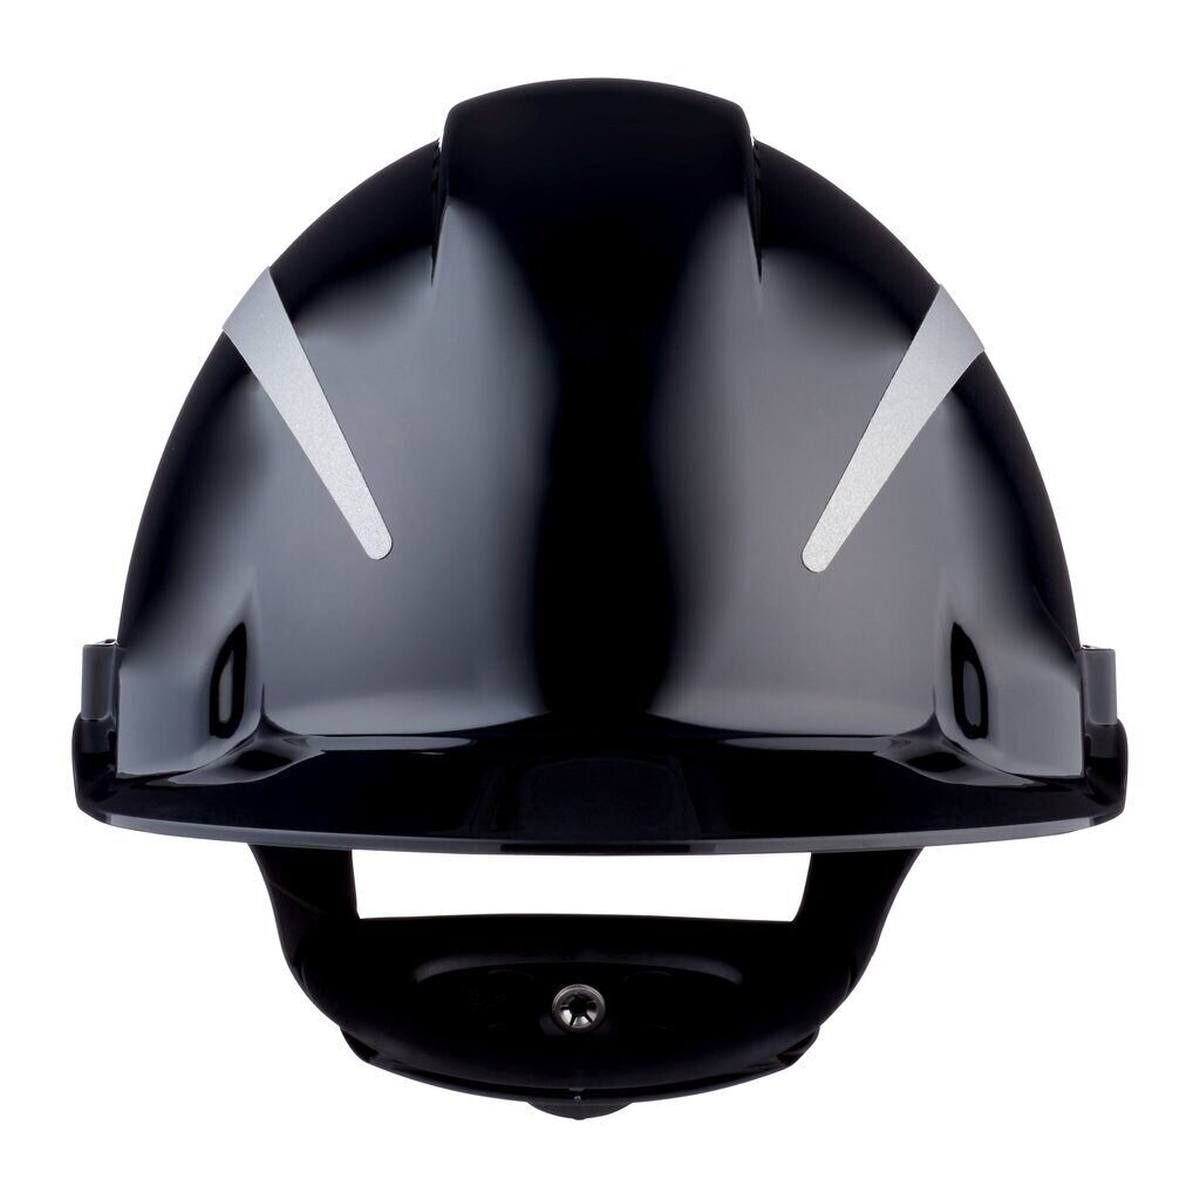 3M G3000 Schutzhelm mit UV-Indikator, schwarz, ABS, belüftet Ratschenverschluss, Kunststoffschweißband, Reflex-Aufkleber